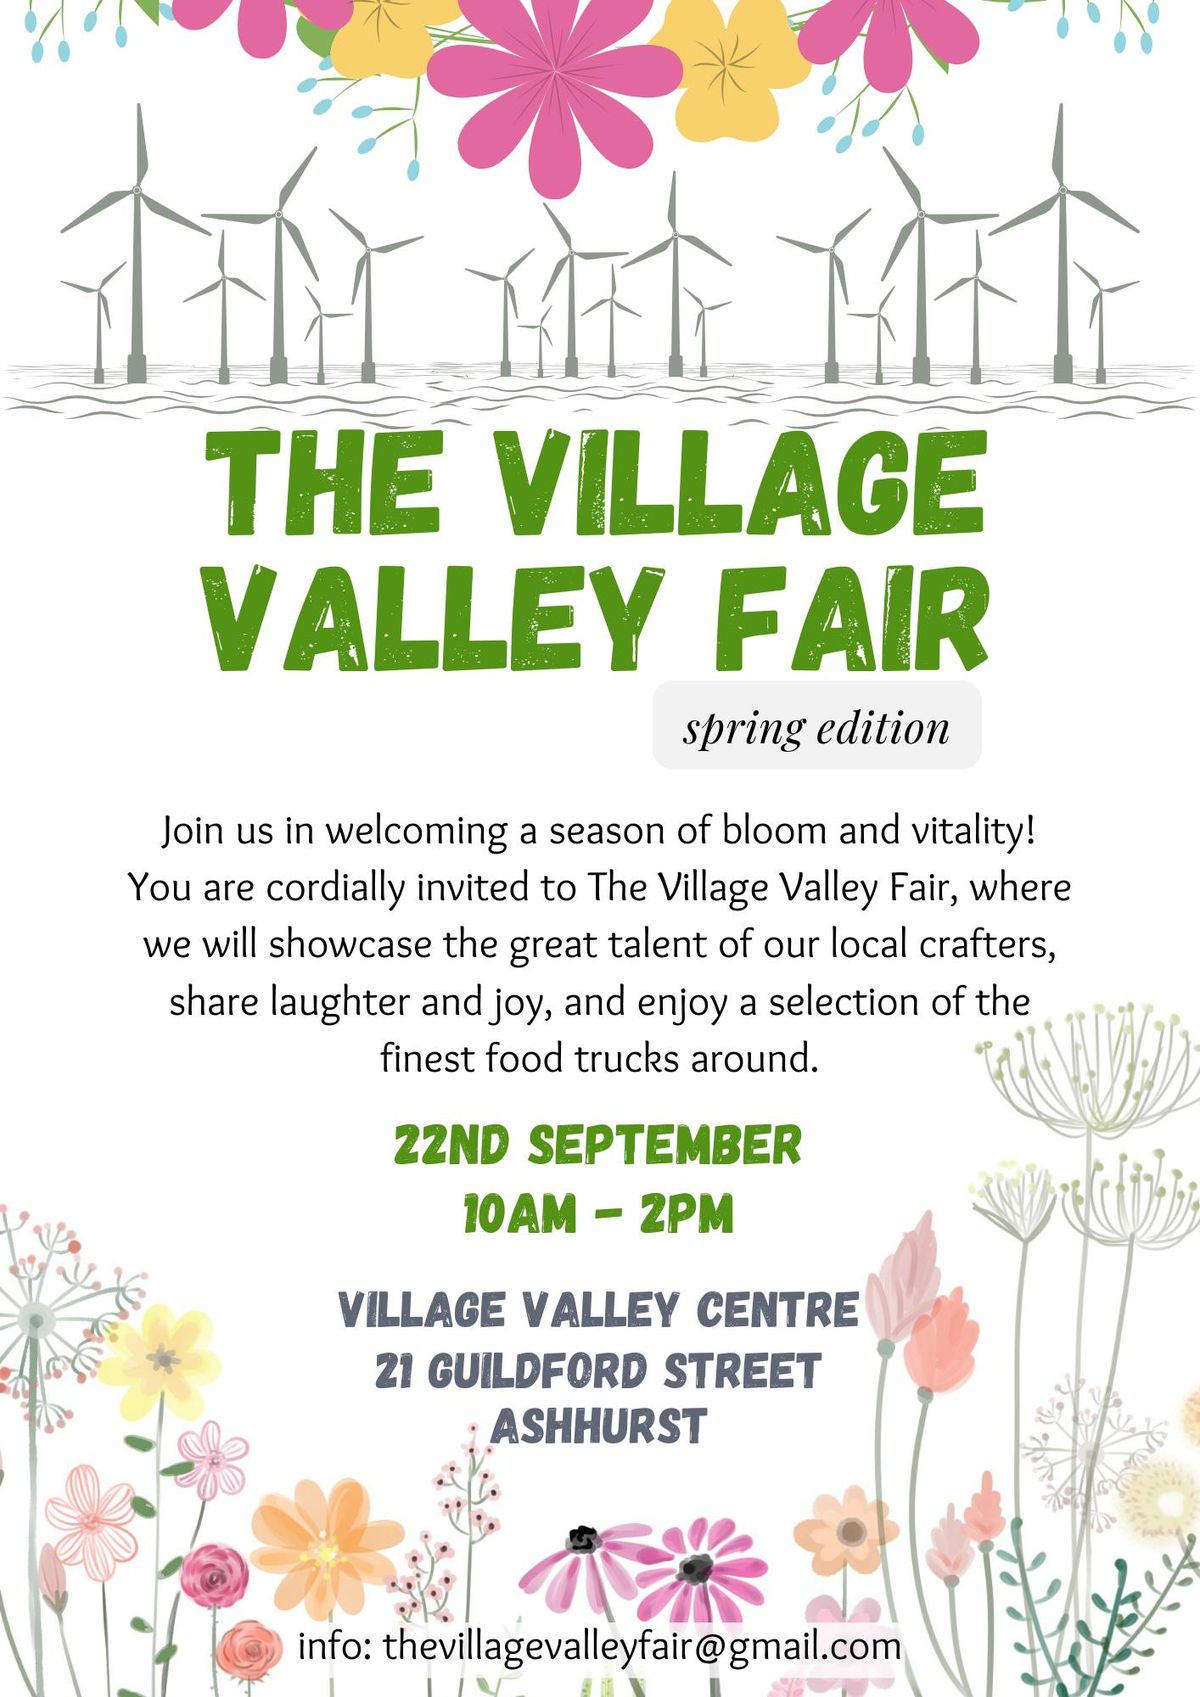 The Village Valley Fair